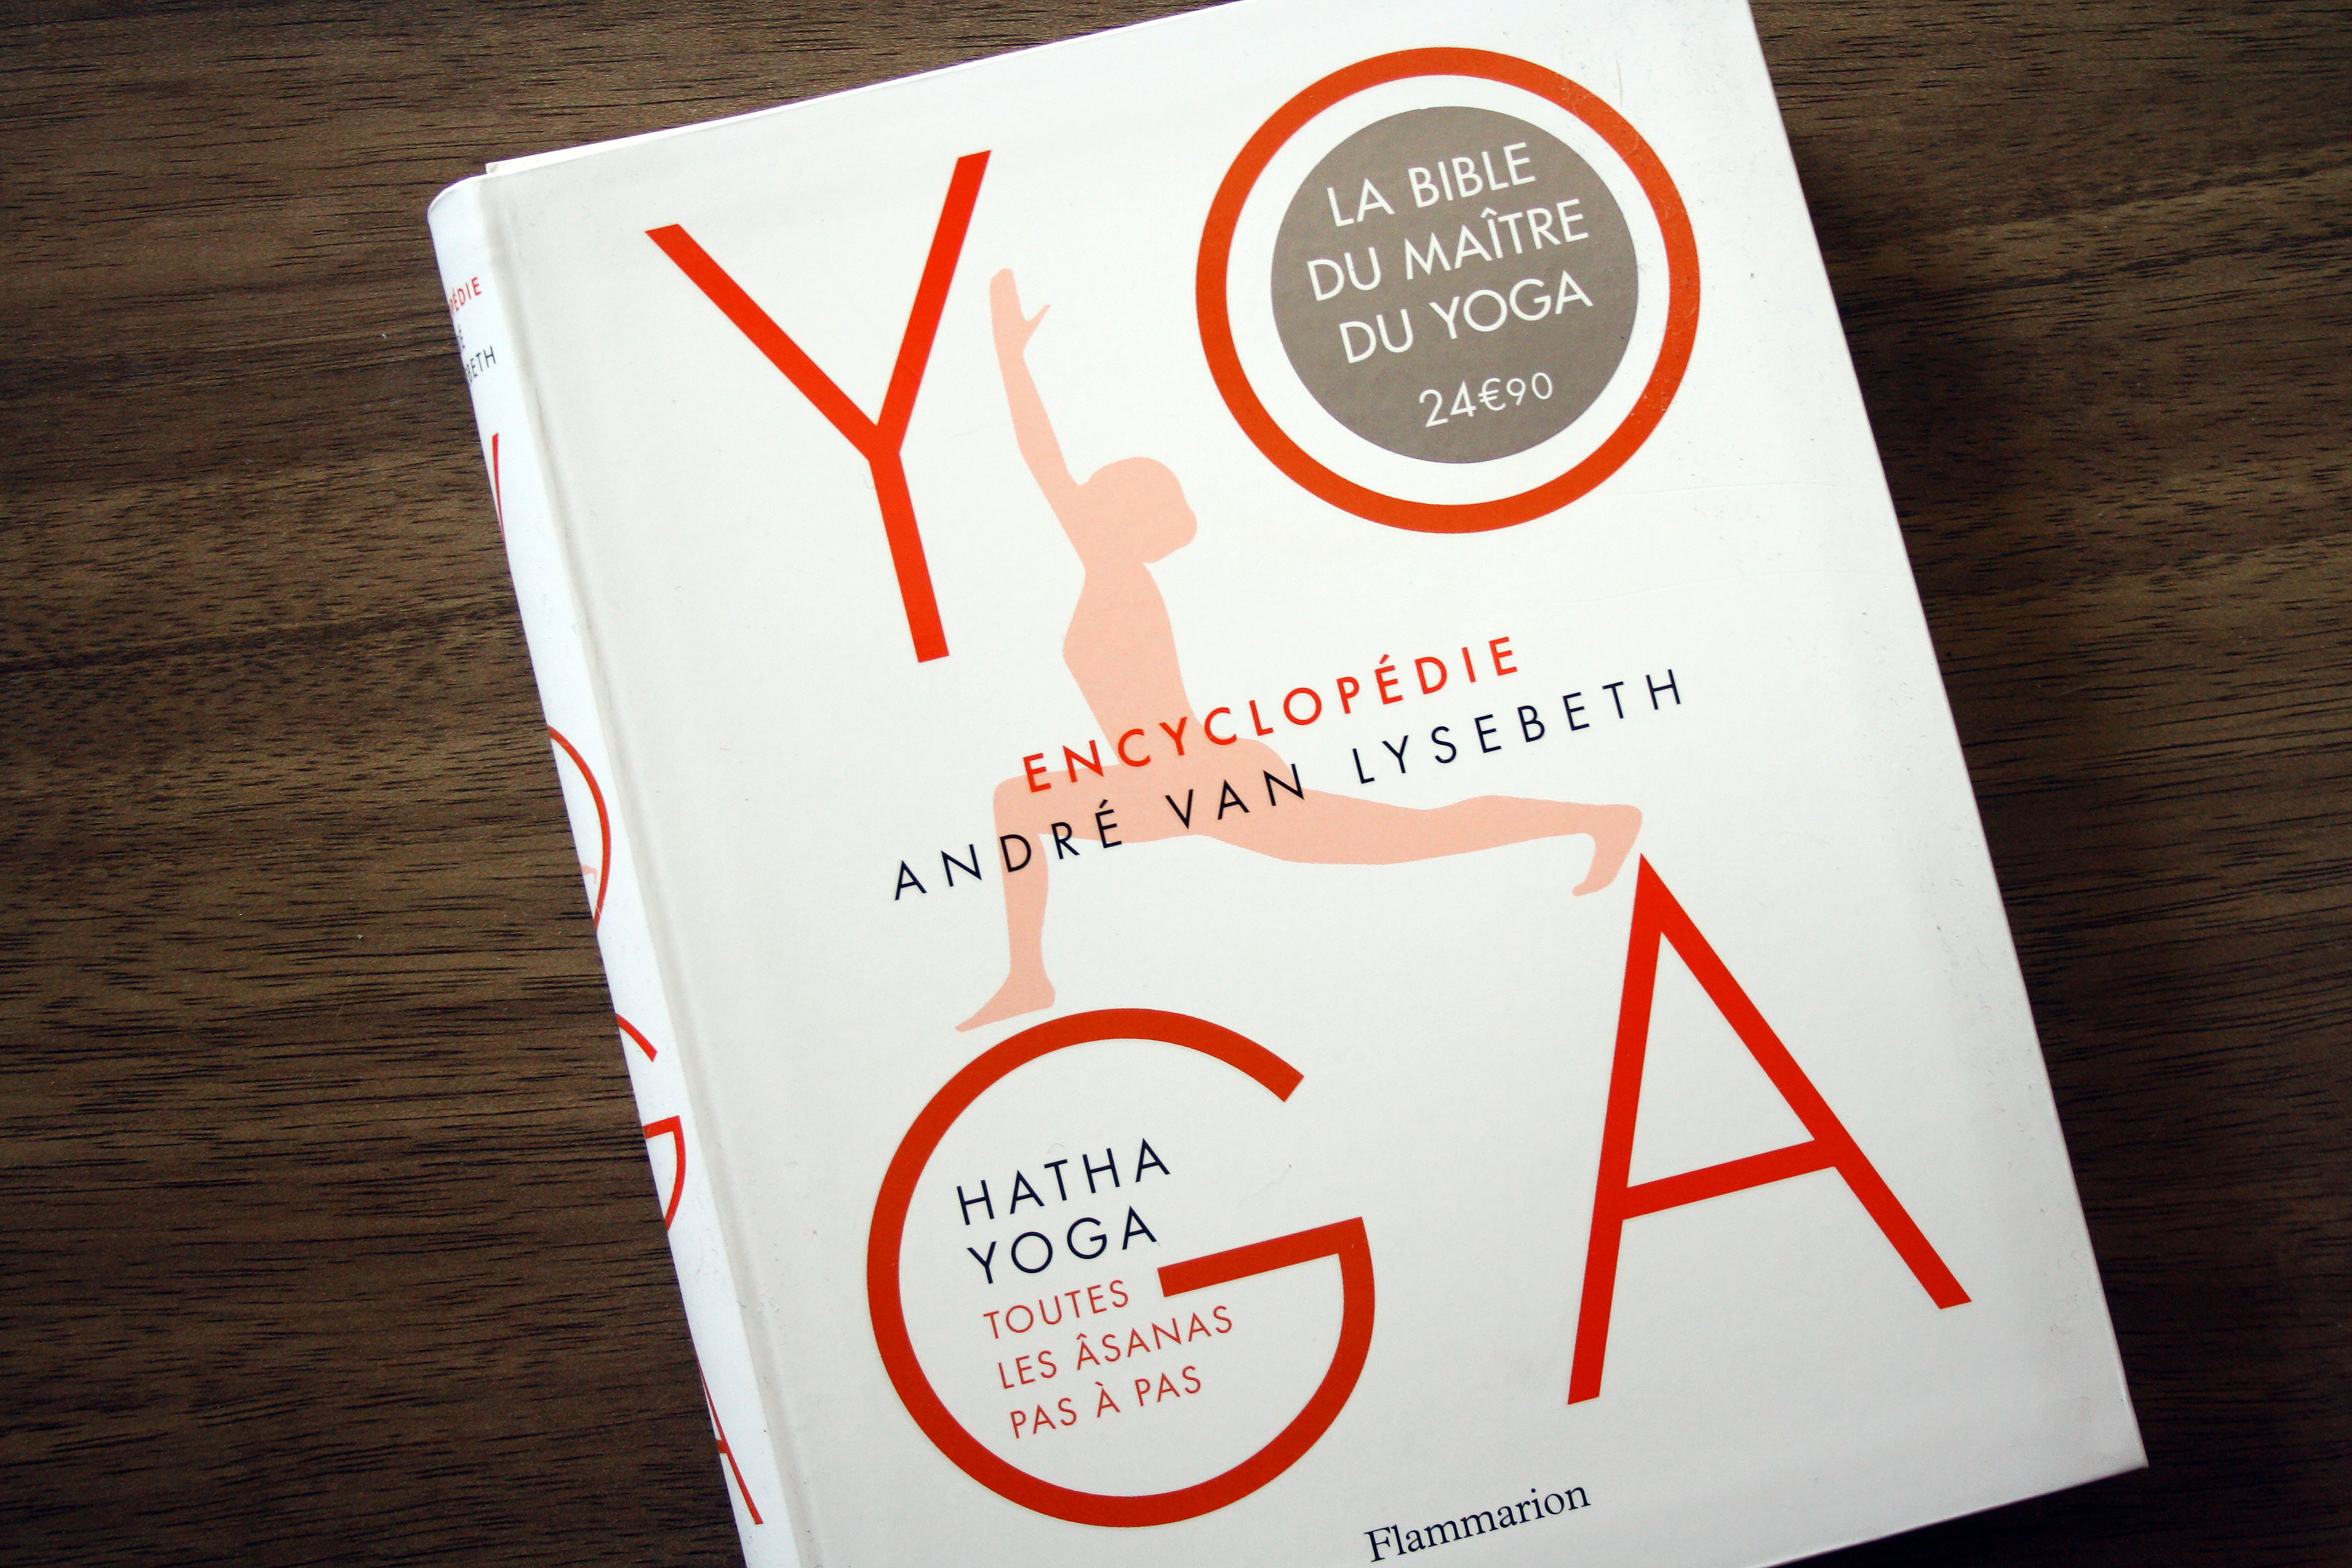 Encyclopédie du yoga